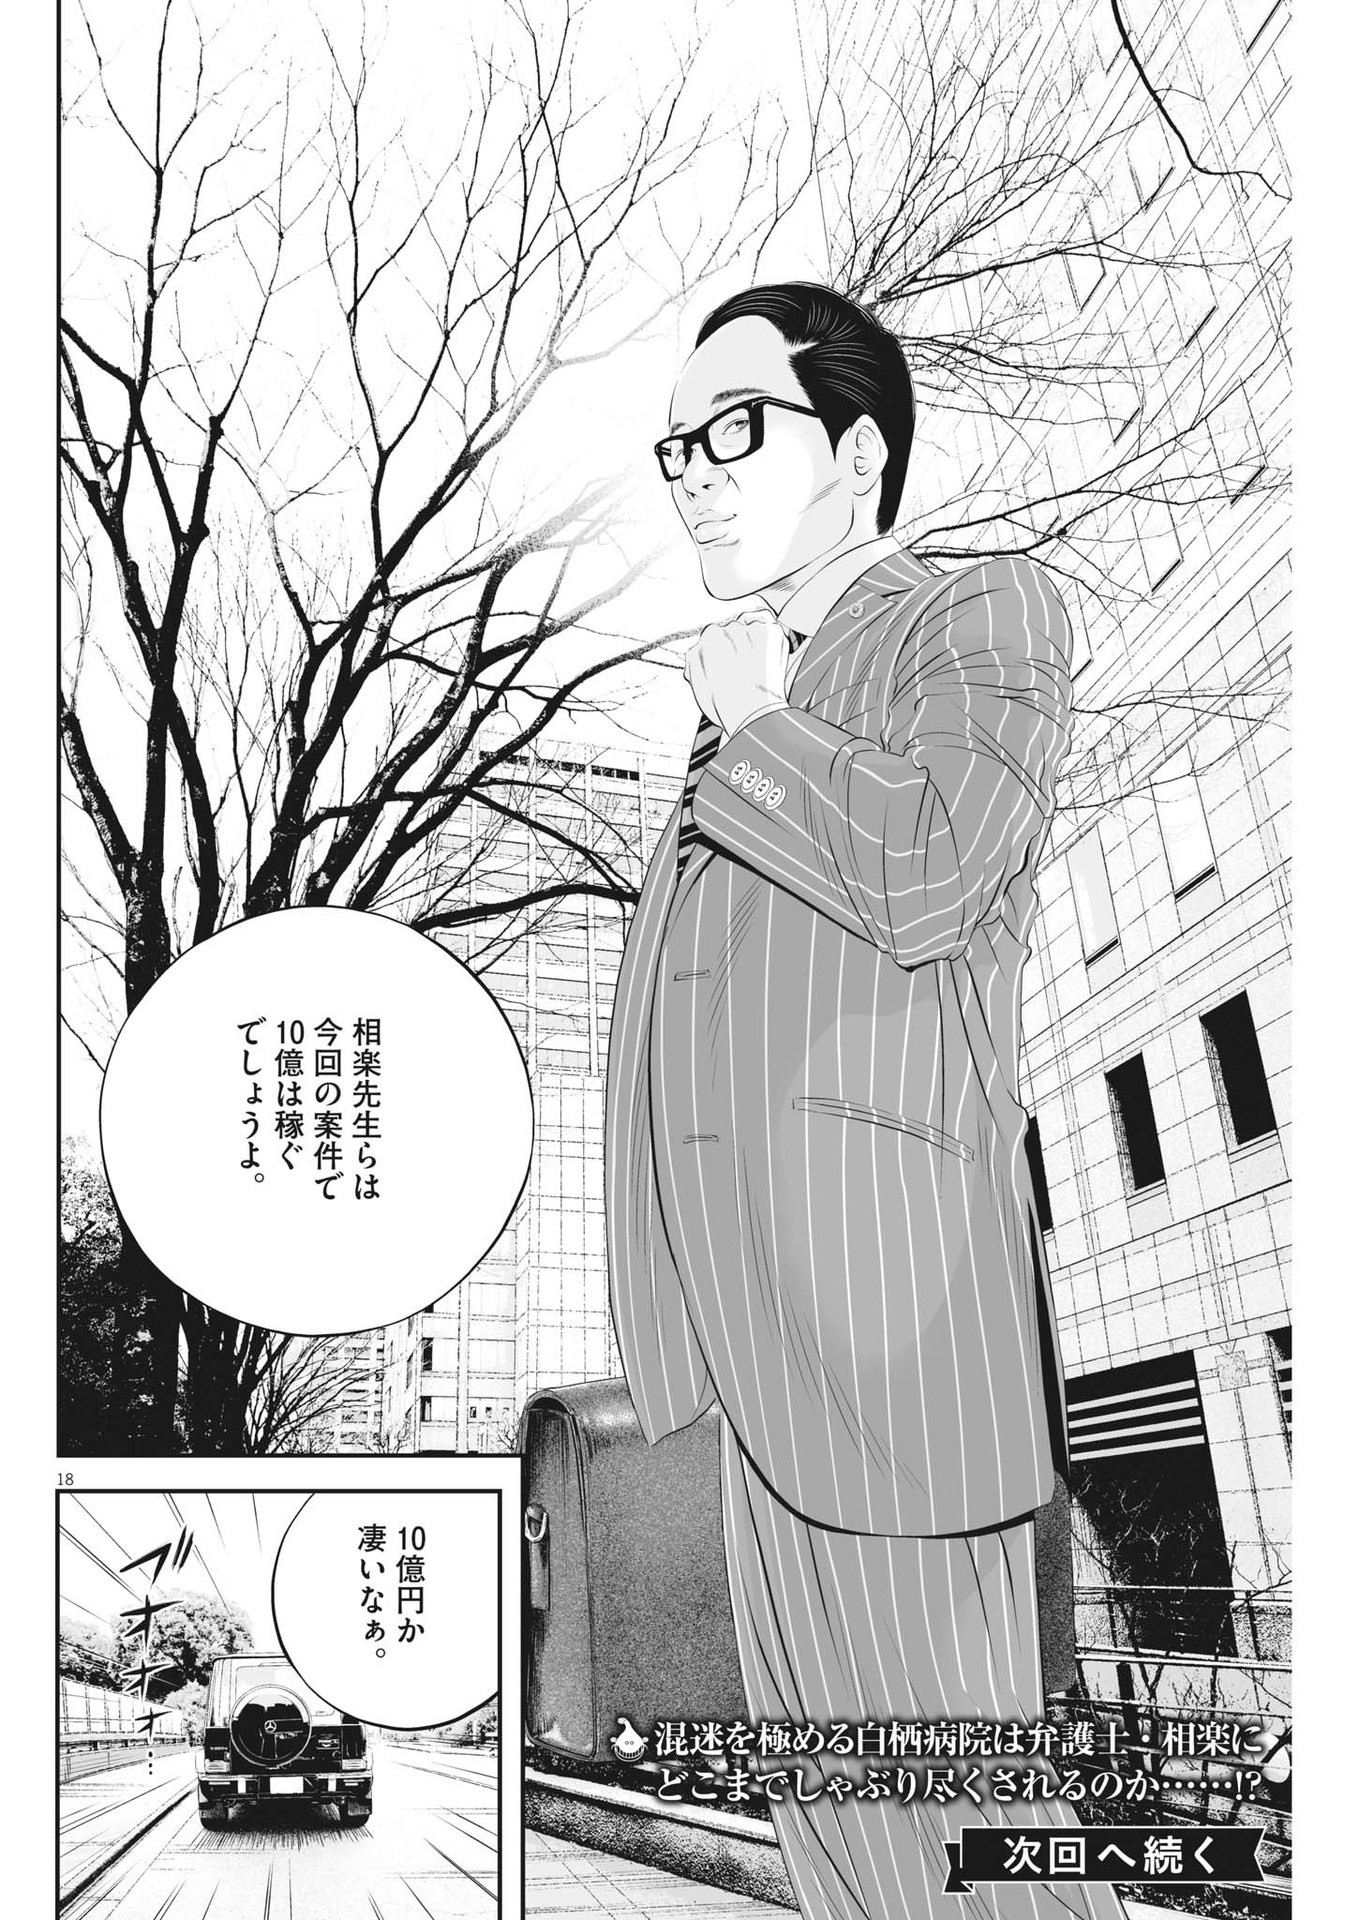 Kujou no Taizai - Chapter 93 - Page 18